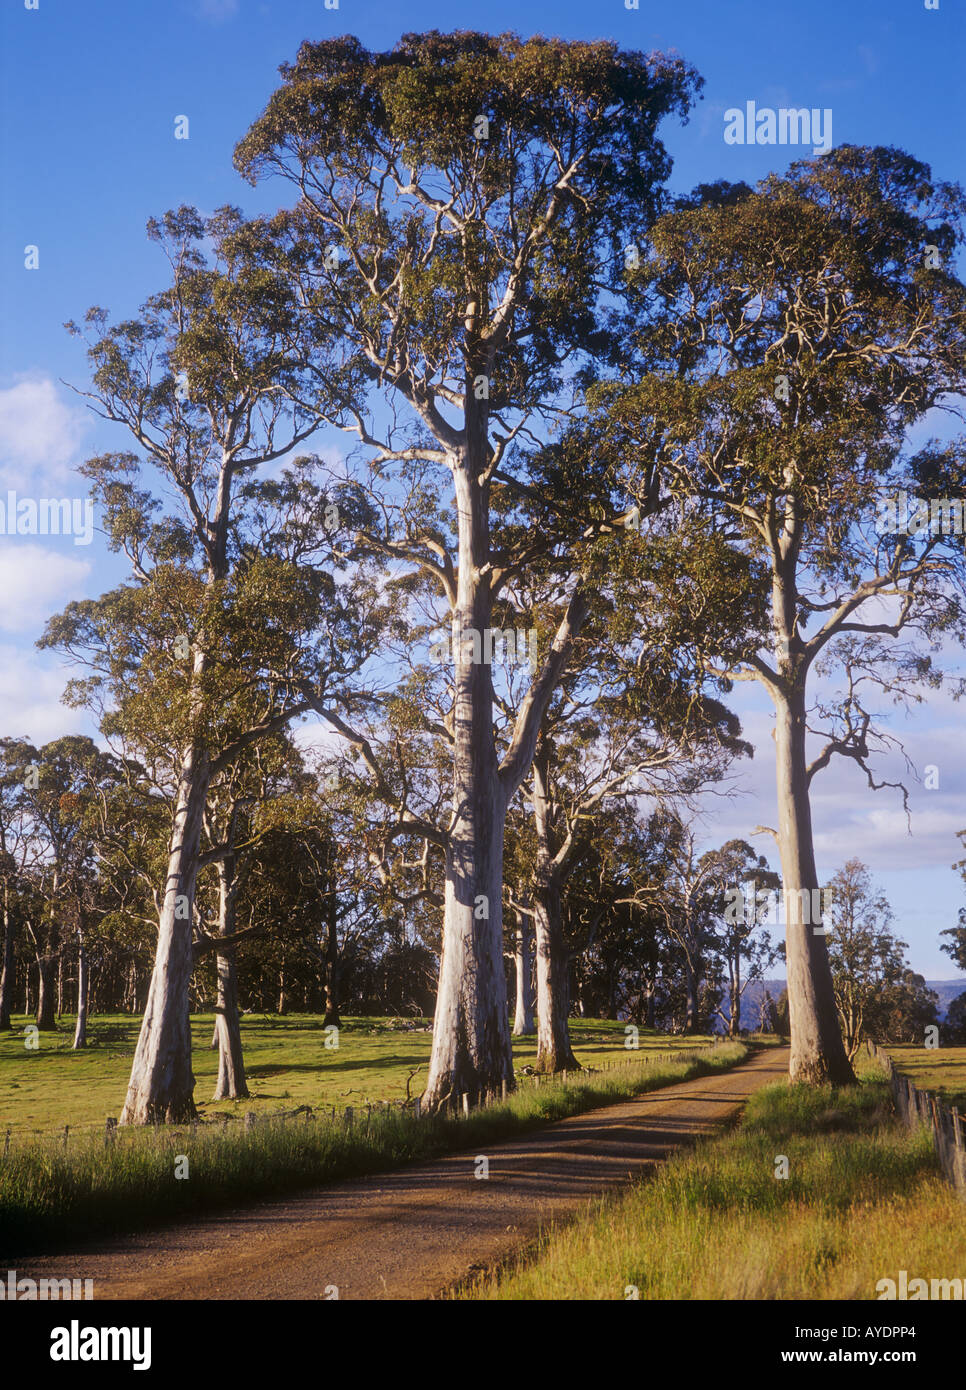 Country lane, Tasmania, Australia Stock Photo